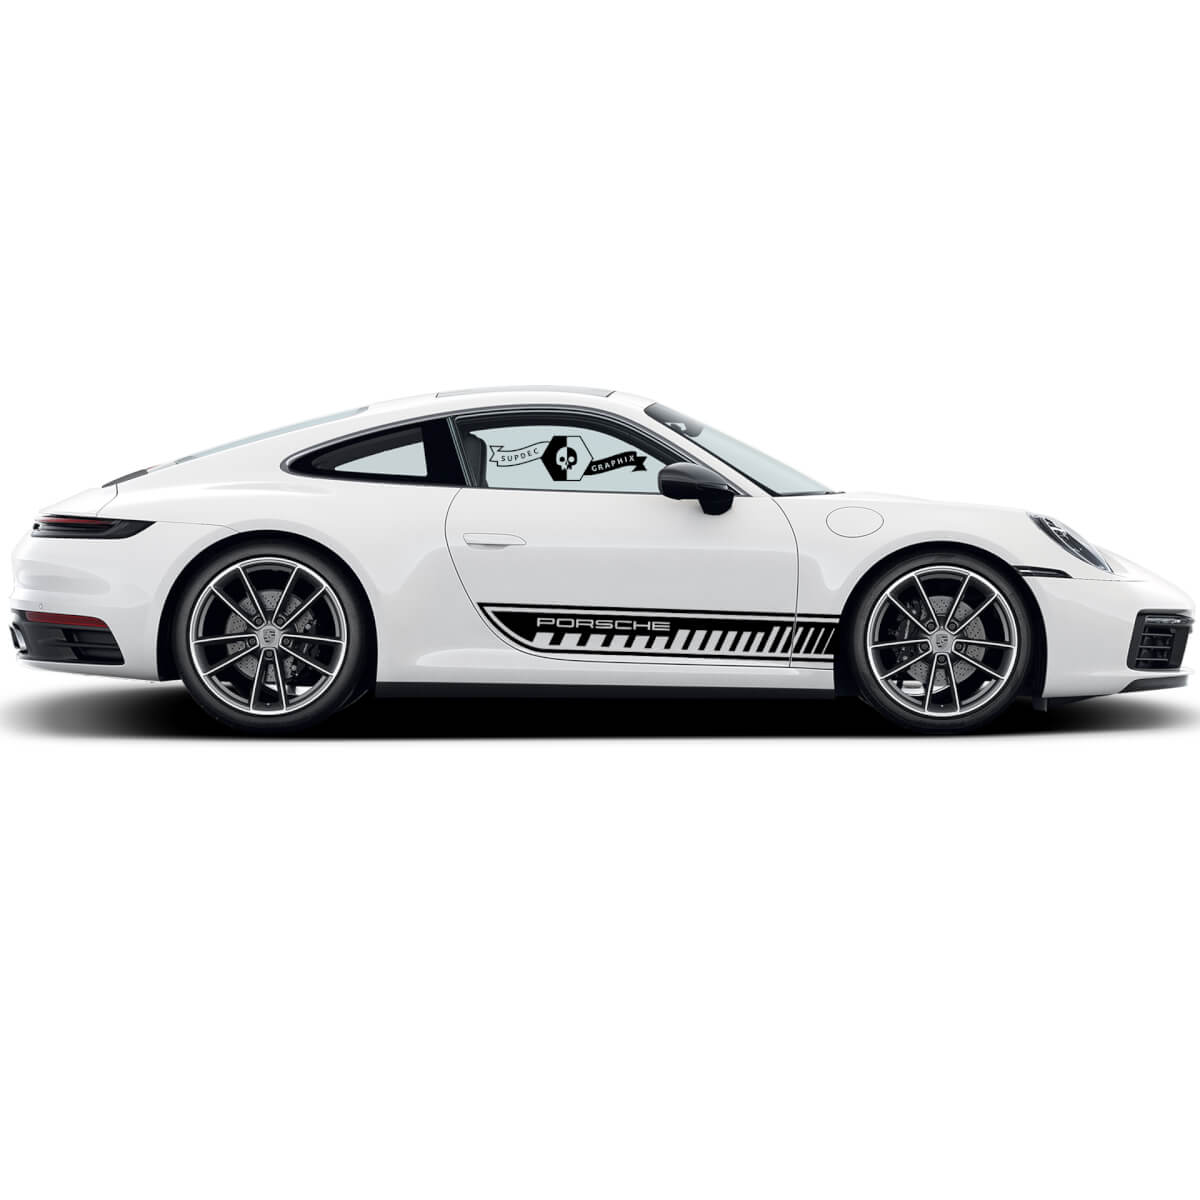 2 Porsche 911 Porsche Carrera Rocker Panel Side Stripes Doors Trim Kit Decal Sticker 